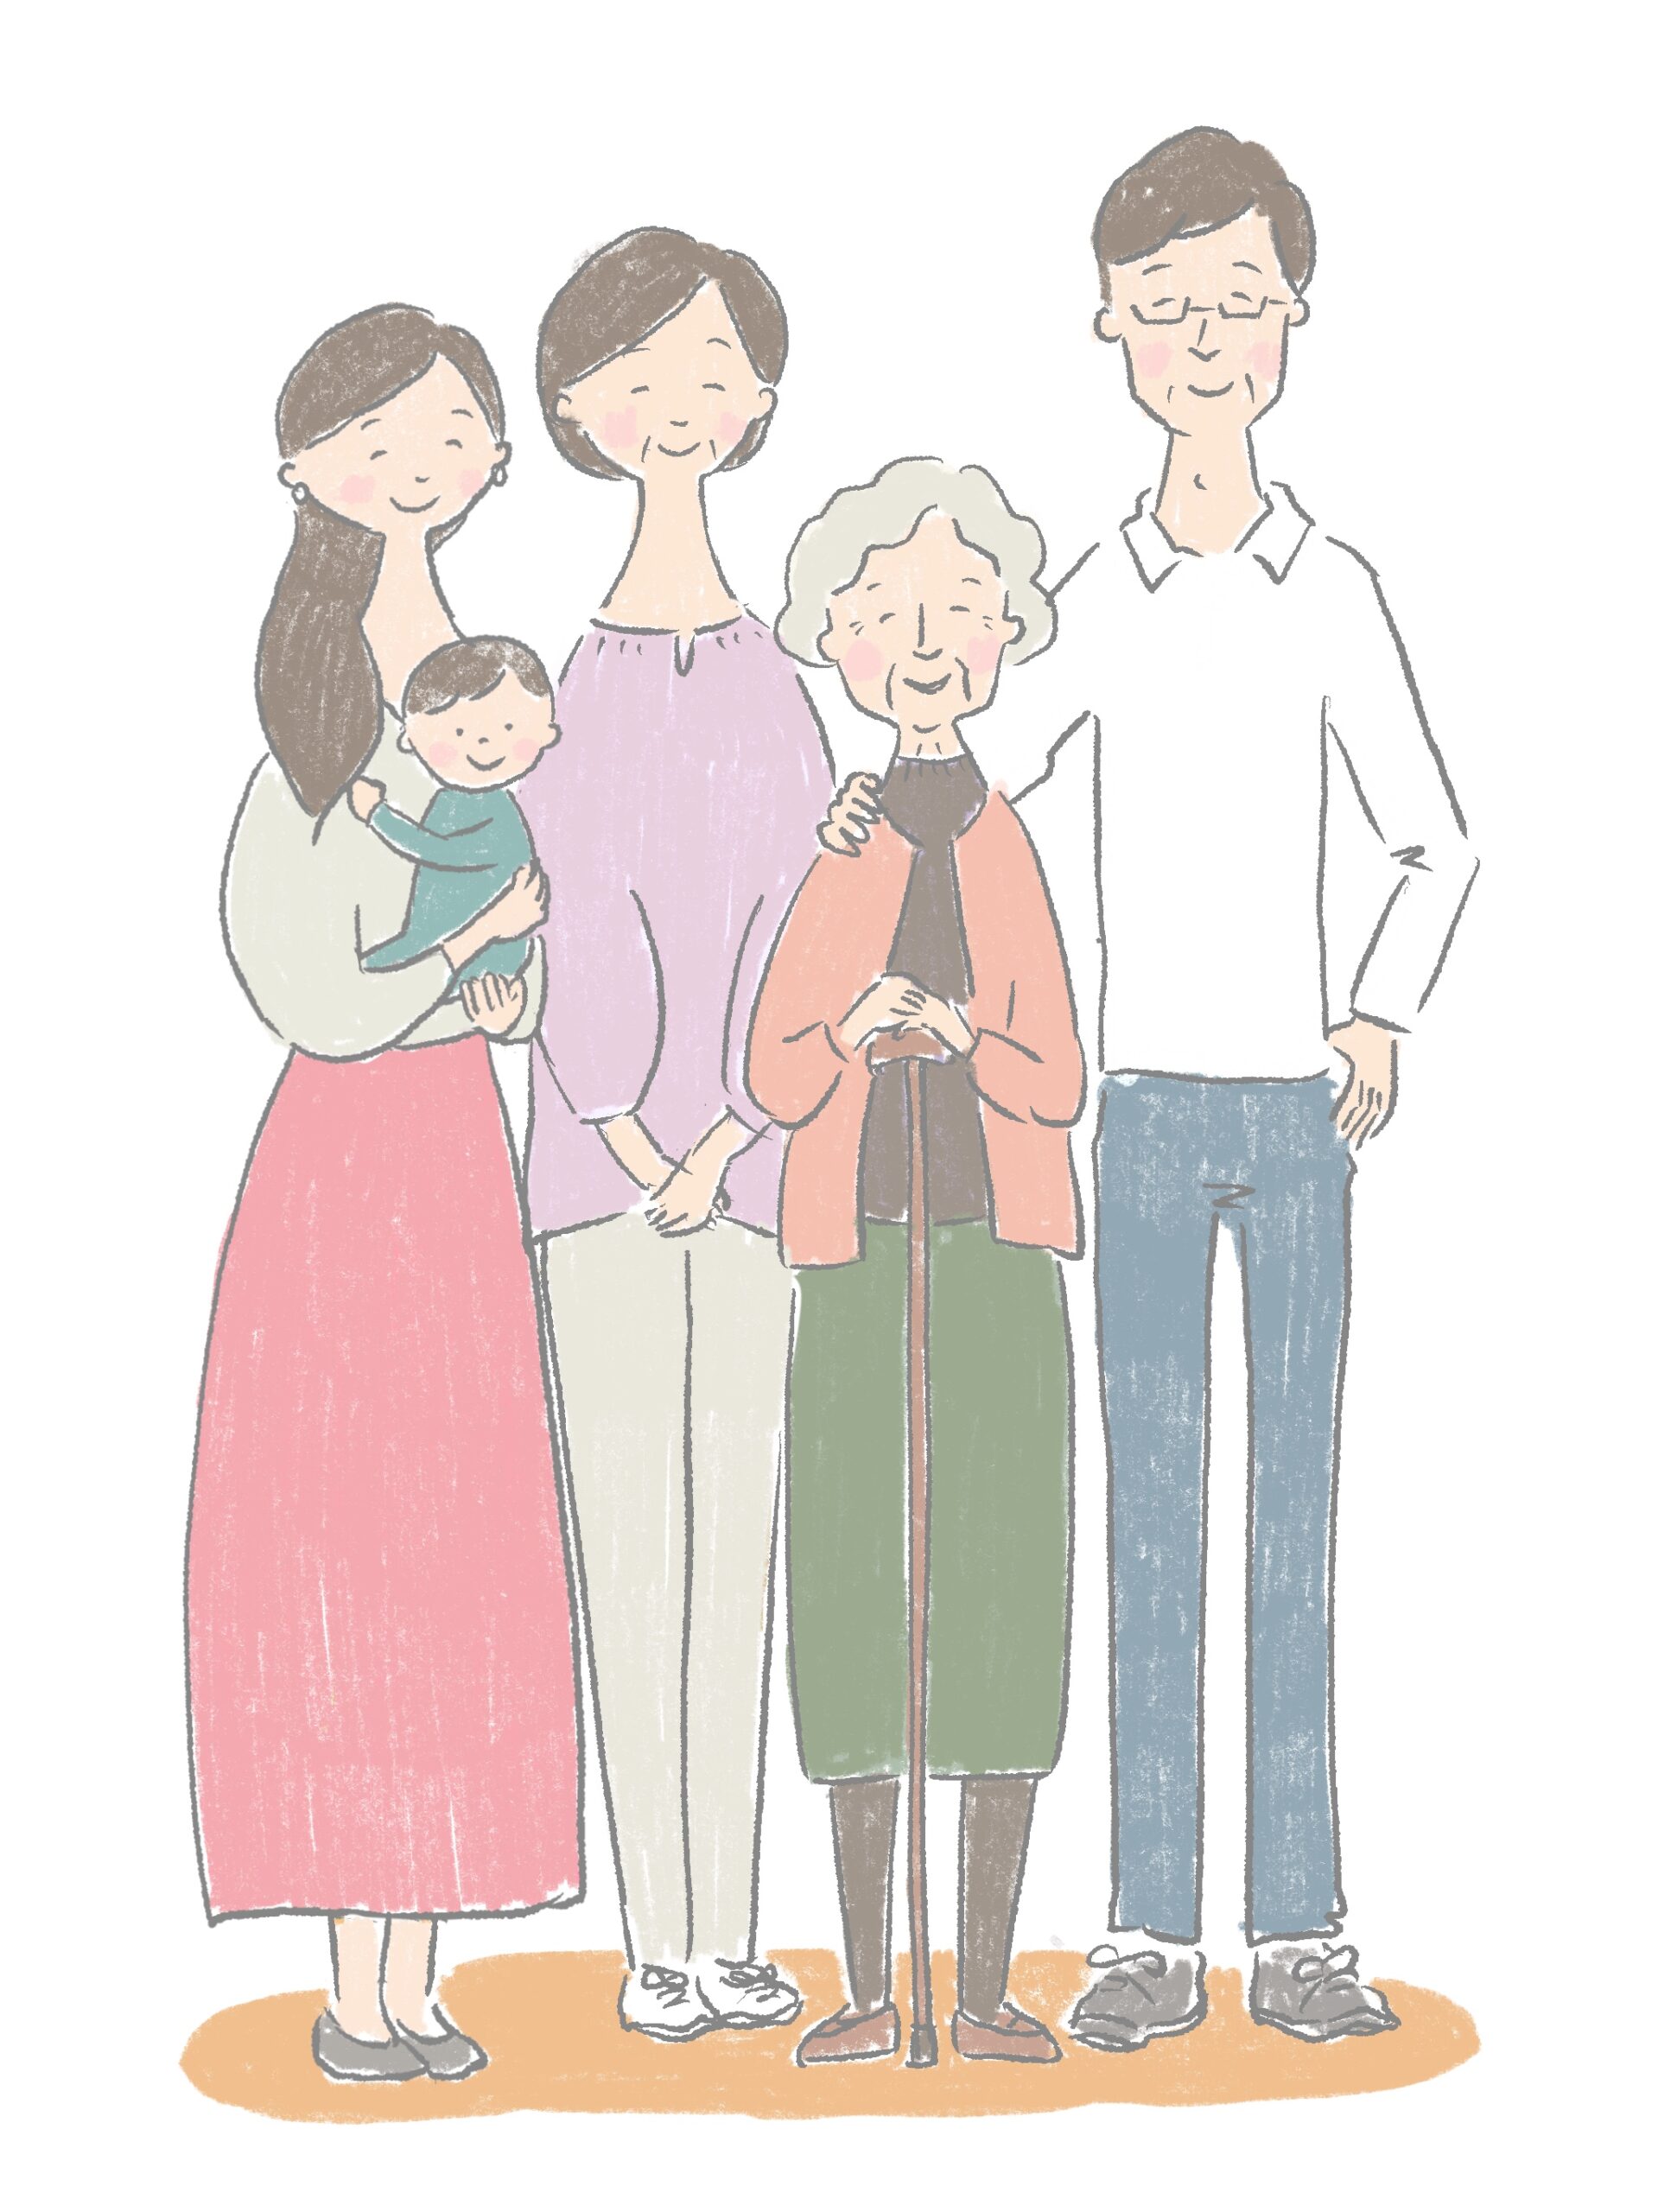 家族が老人ホームへ行く際の気を付けておくべきポイント